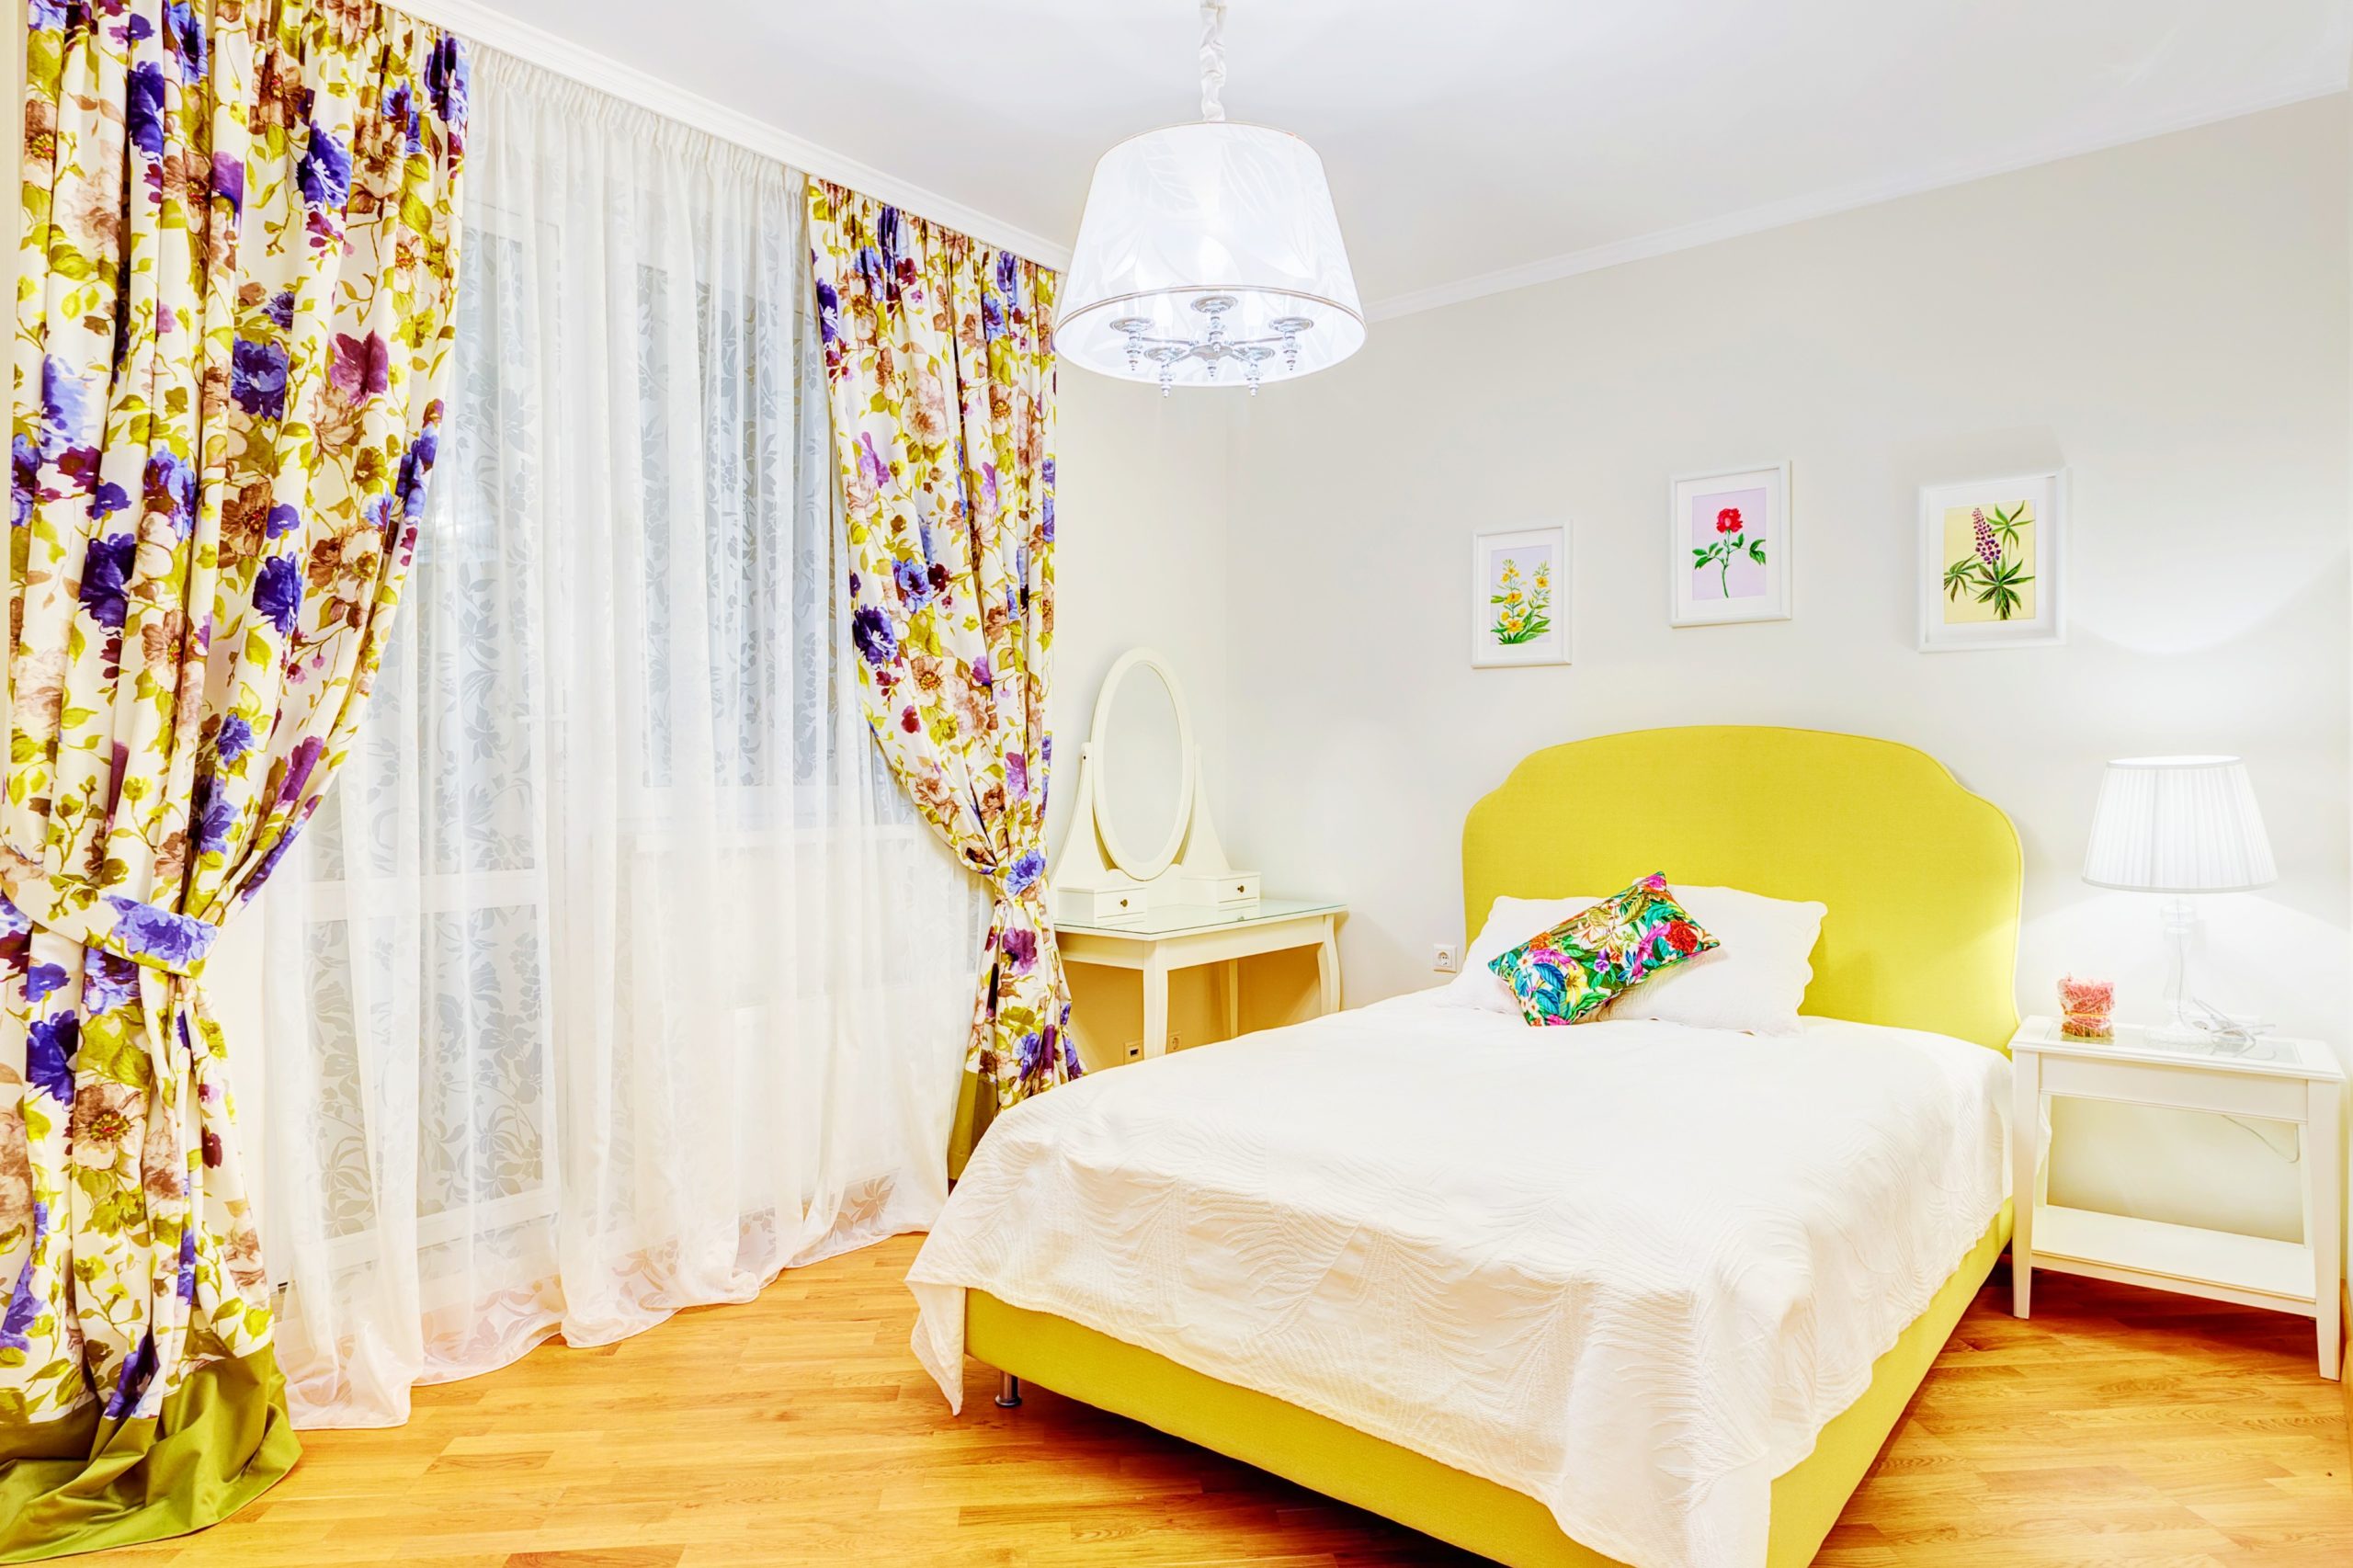 <img src="floral.jpg" alt="floral curtains in bedroom"/> 